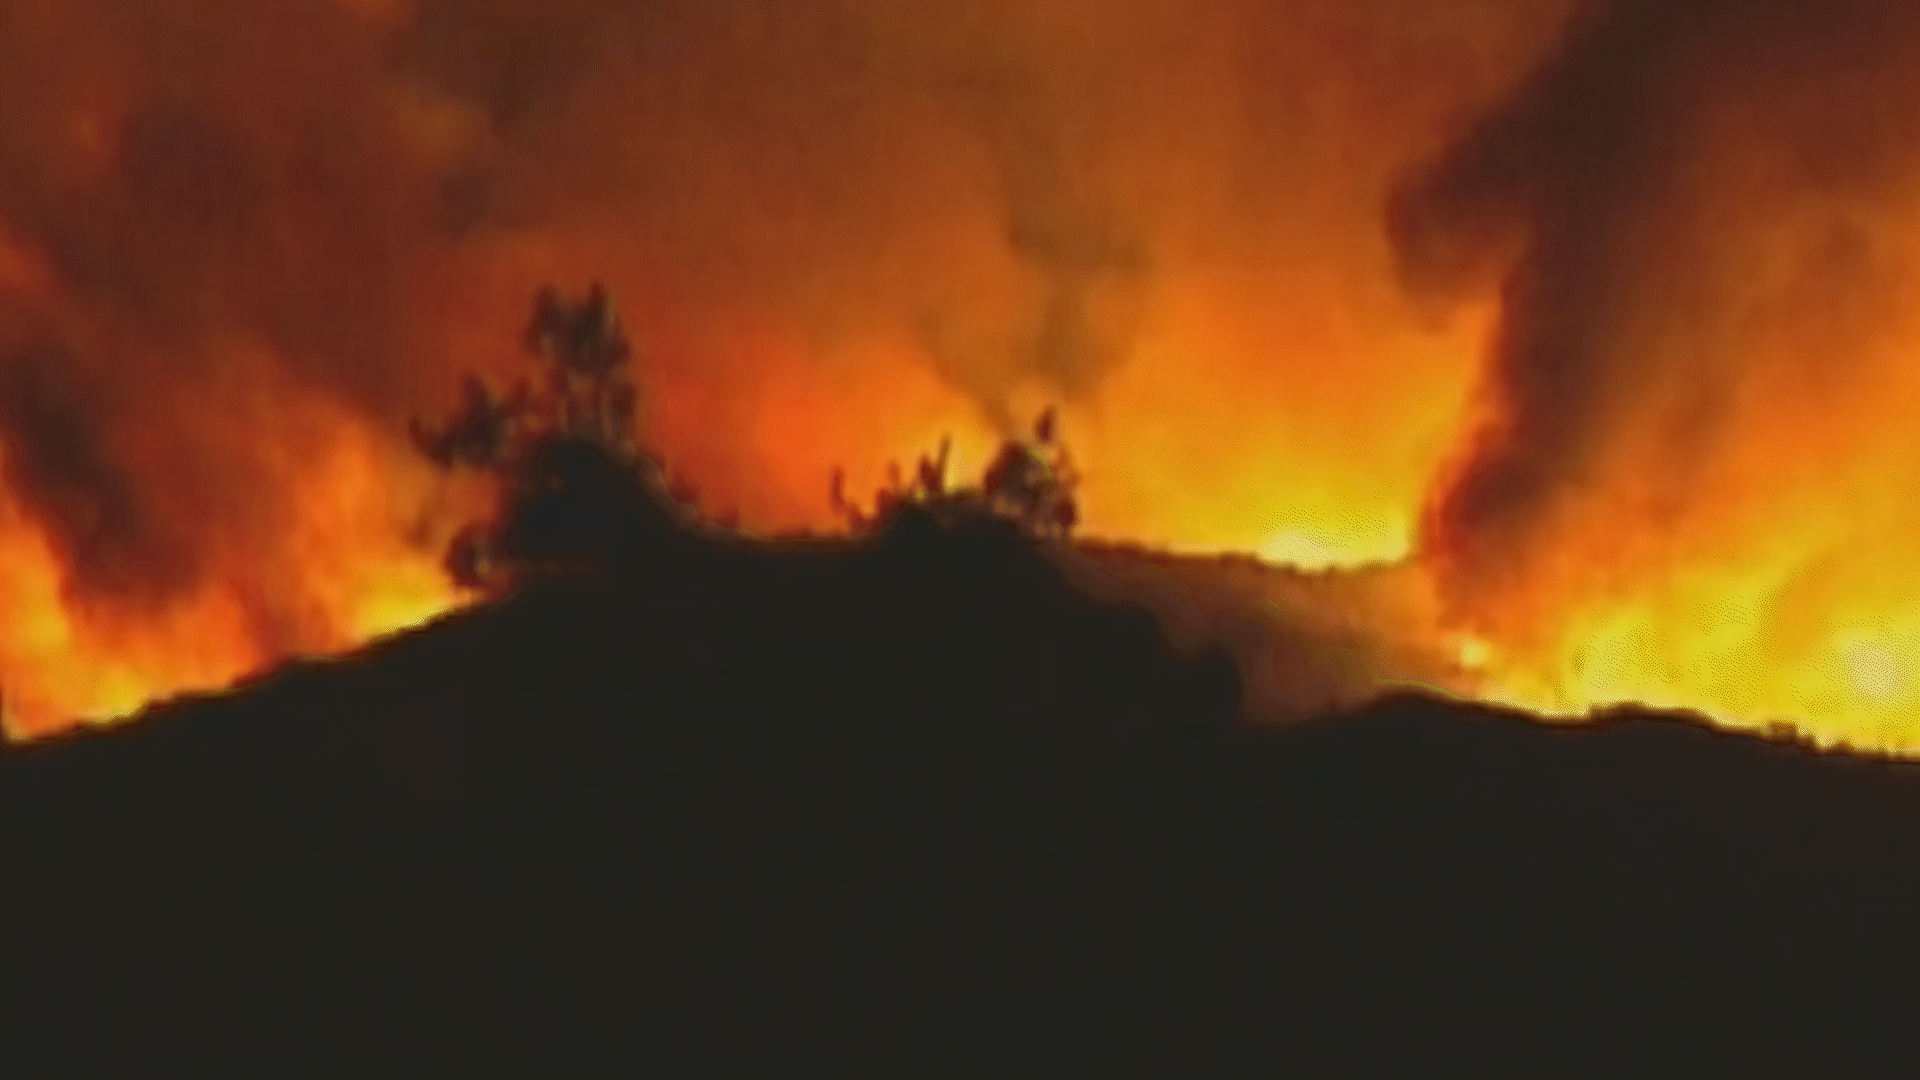 Tormenta de fuego 2003:  20 años del incendio Cedar, el más grande y mortífero de San Diego